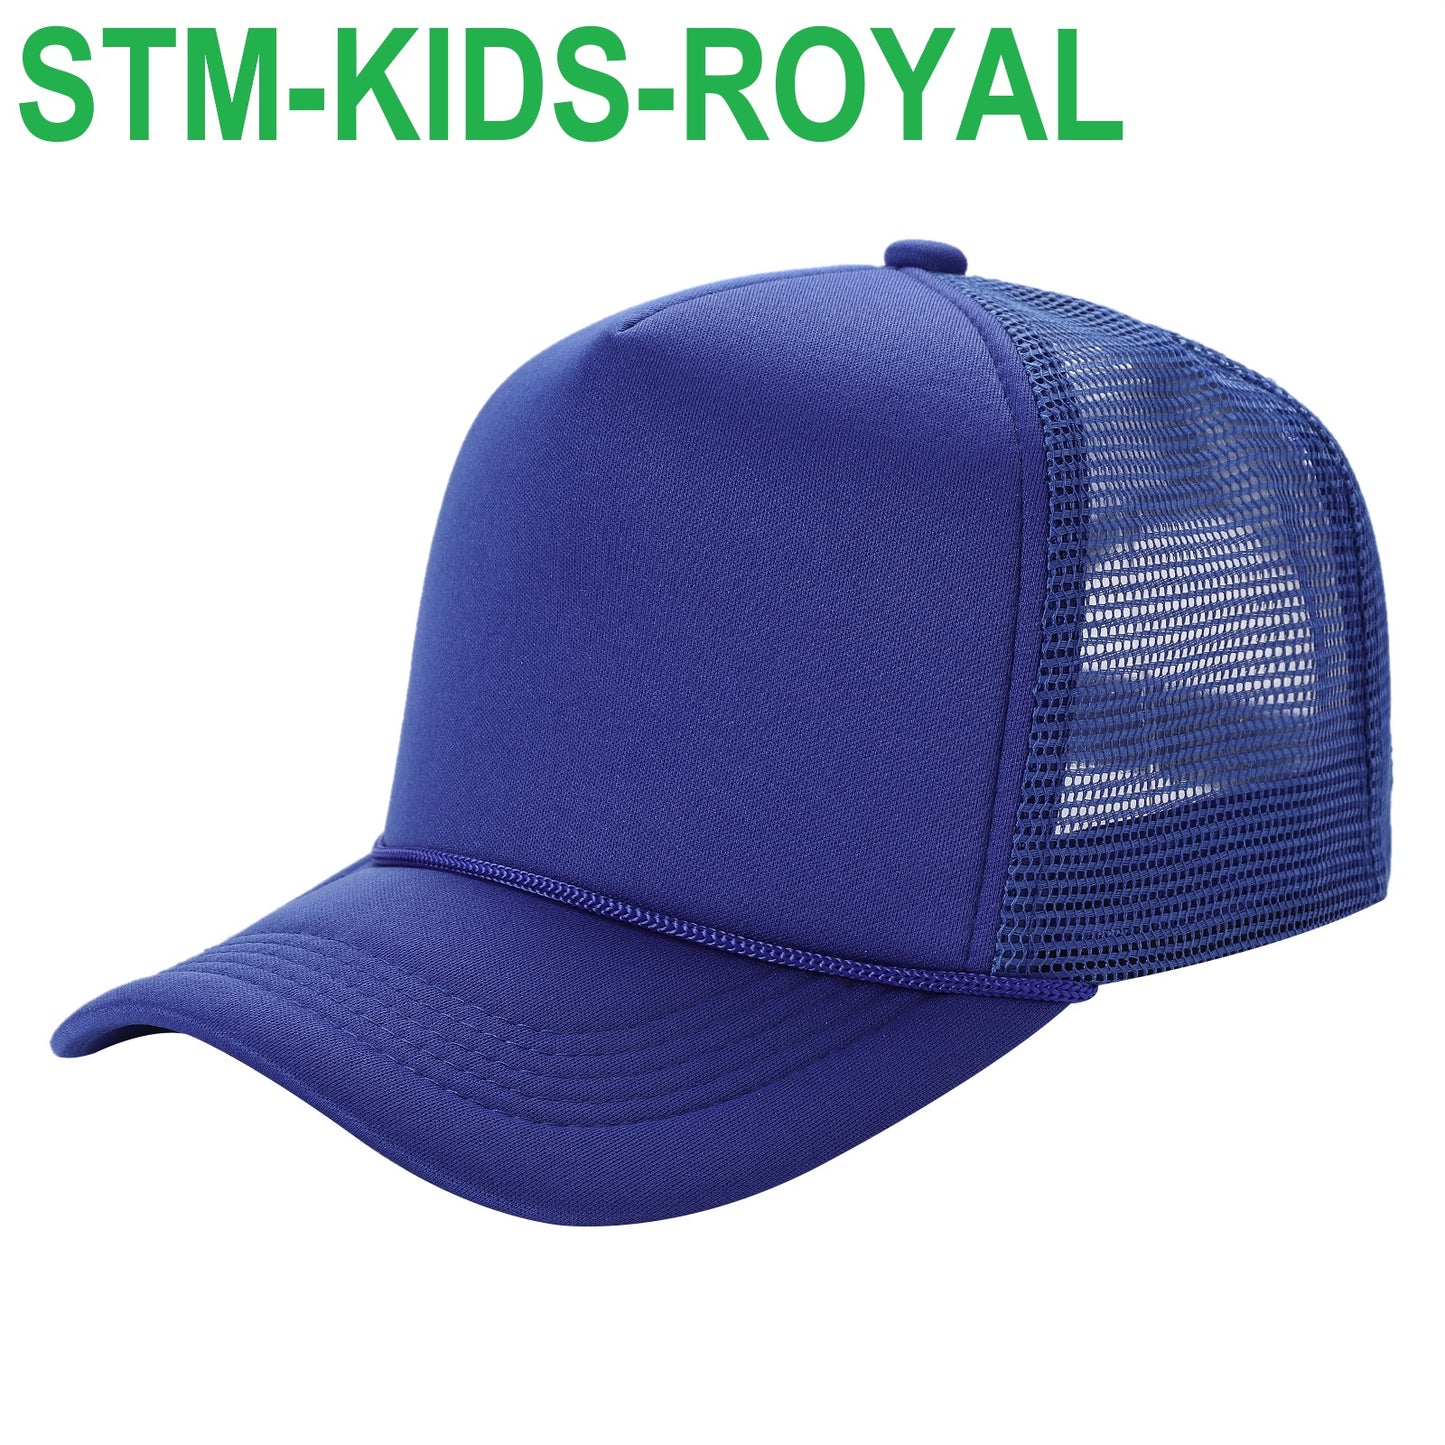 STM KIDS - Sponge Solid Kids Hat